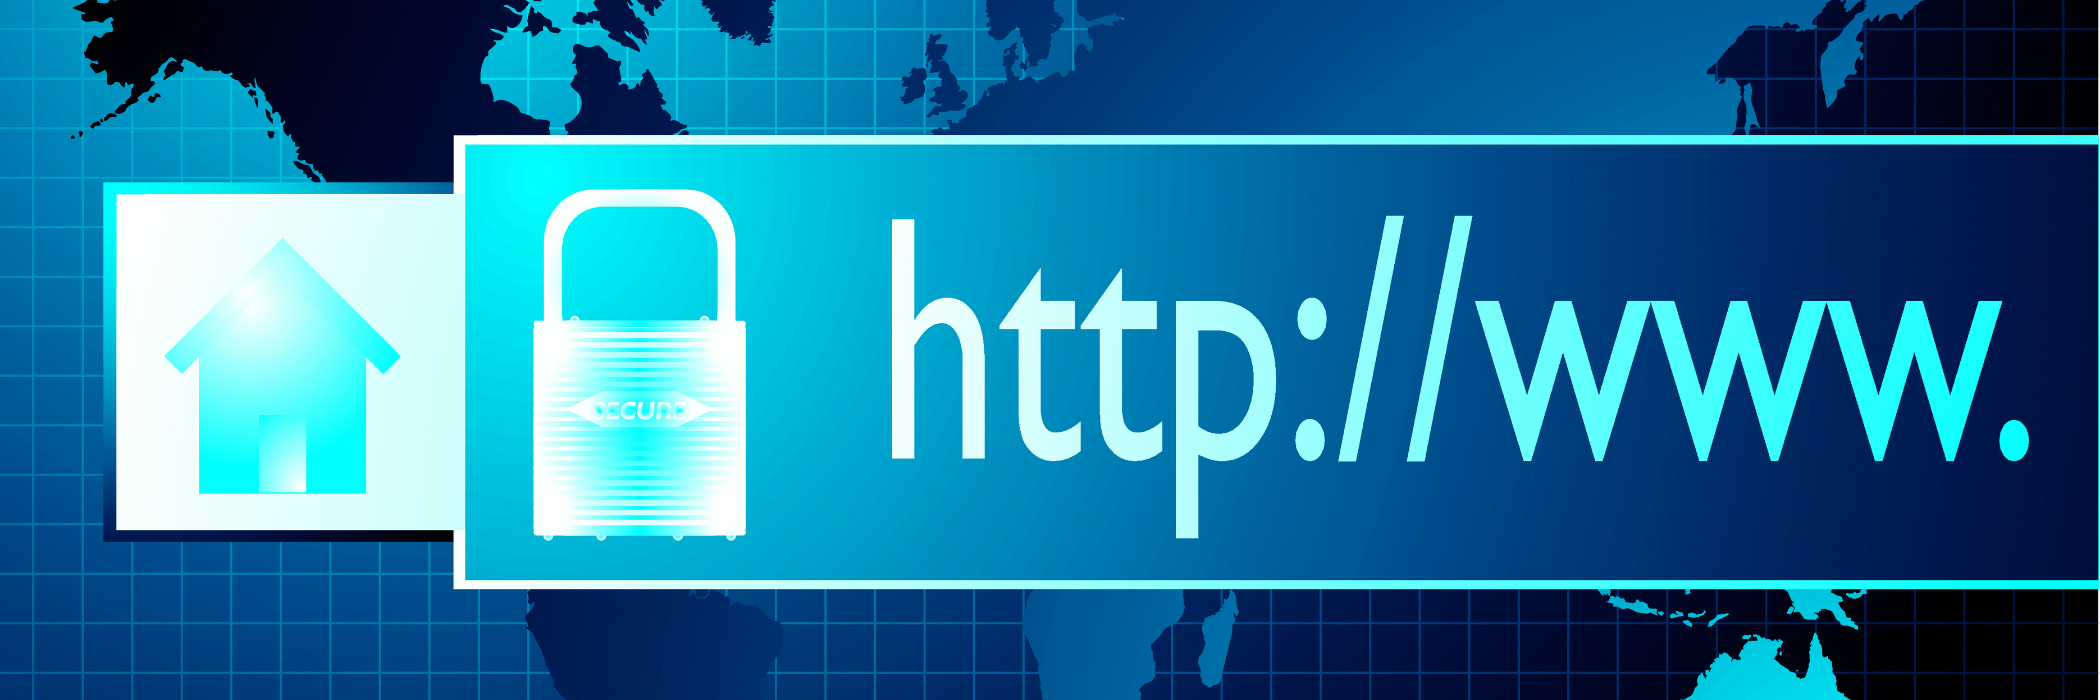 Secure internet browser web address